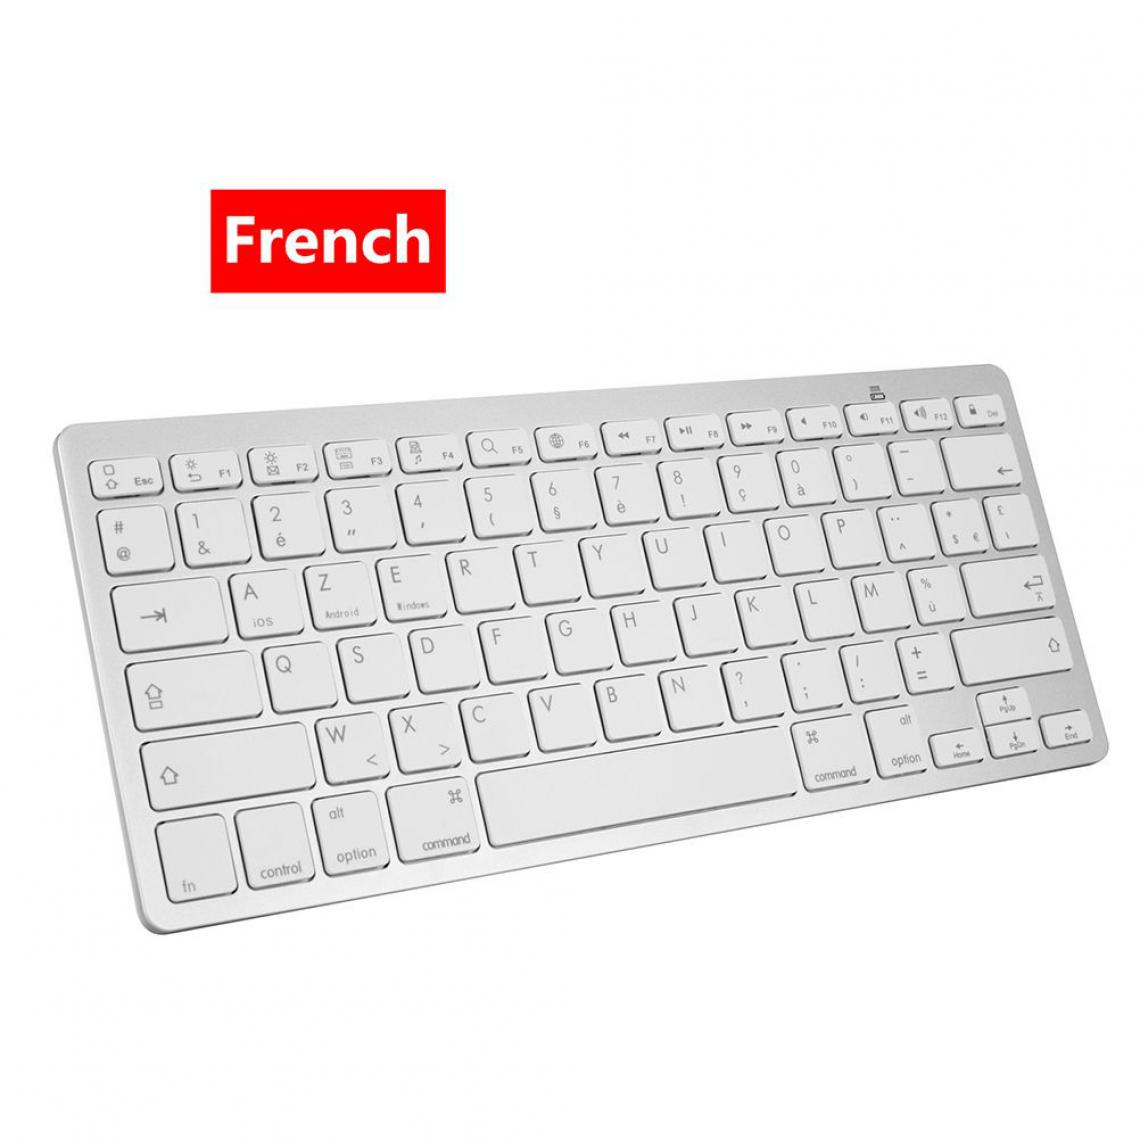 Generic - Clavier français sans fil X5, Ultra-fin, compatible Bluetooth, pour IOS, Android, Microsoft, tablette, Windows, ordinateur de bureau et portable 28.5 * 12 * 0.6 cm - Blanc  - Clavier